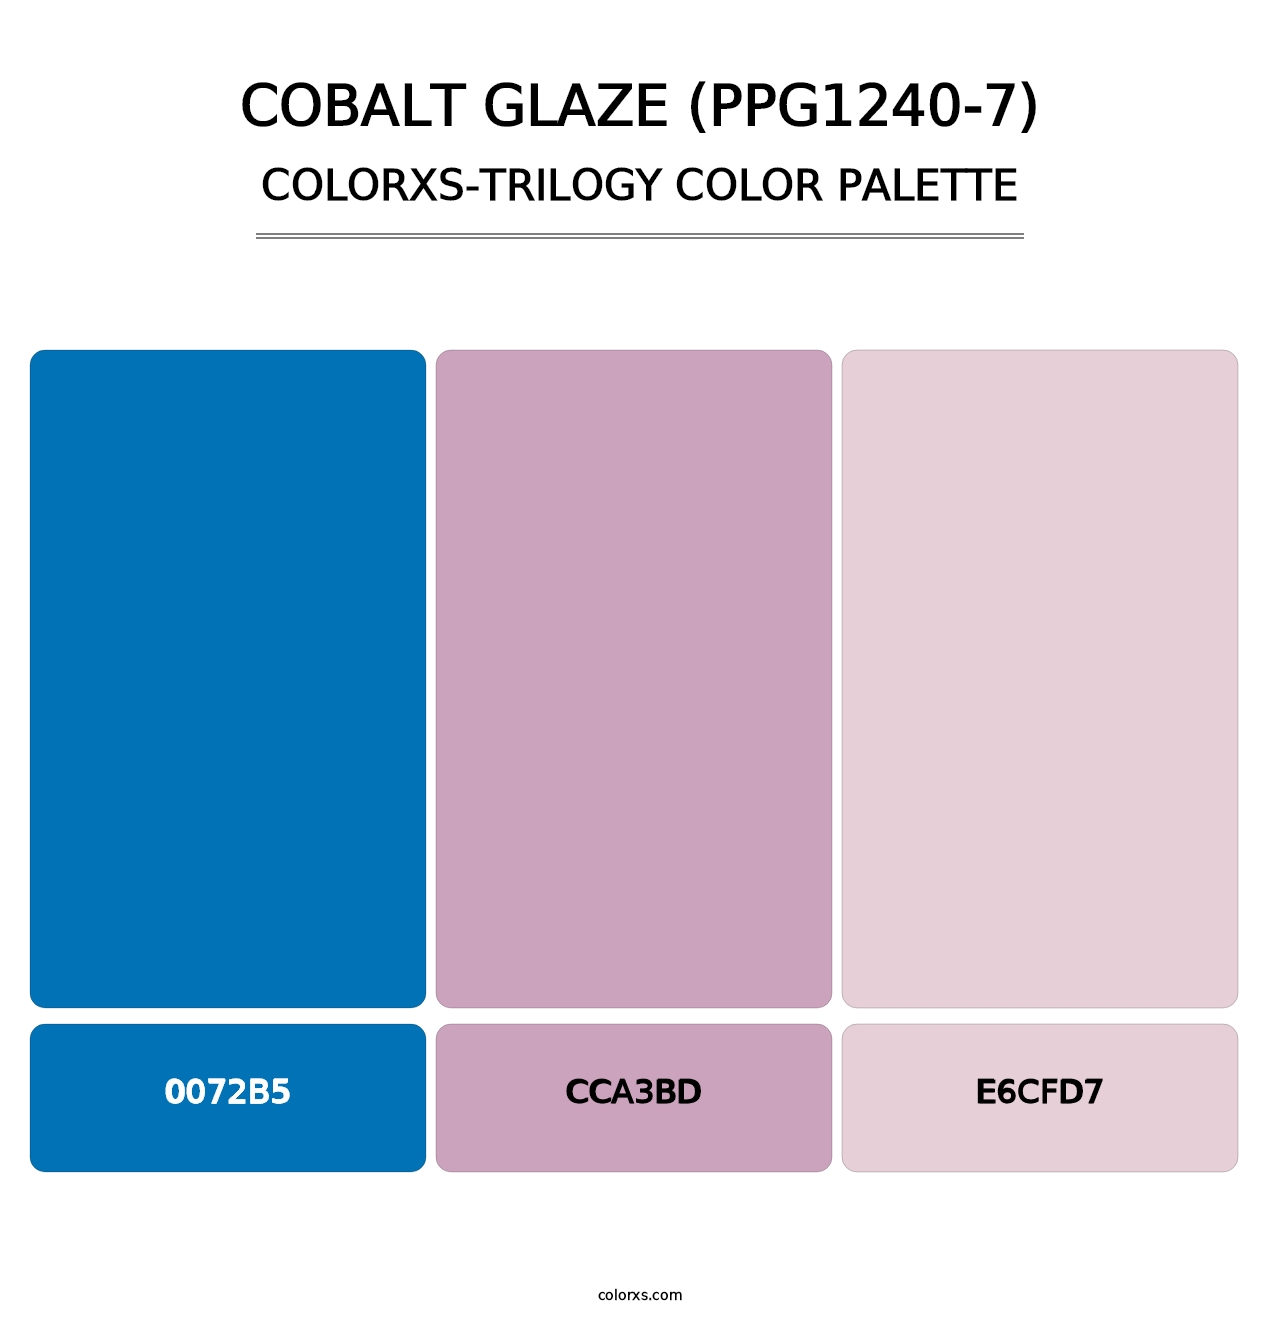 Cobalt Glaze (PPG1240-7) - Colorxs Trilogy Palette